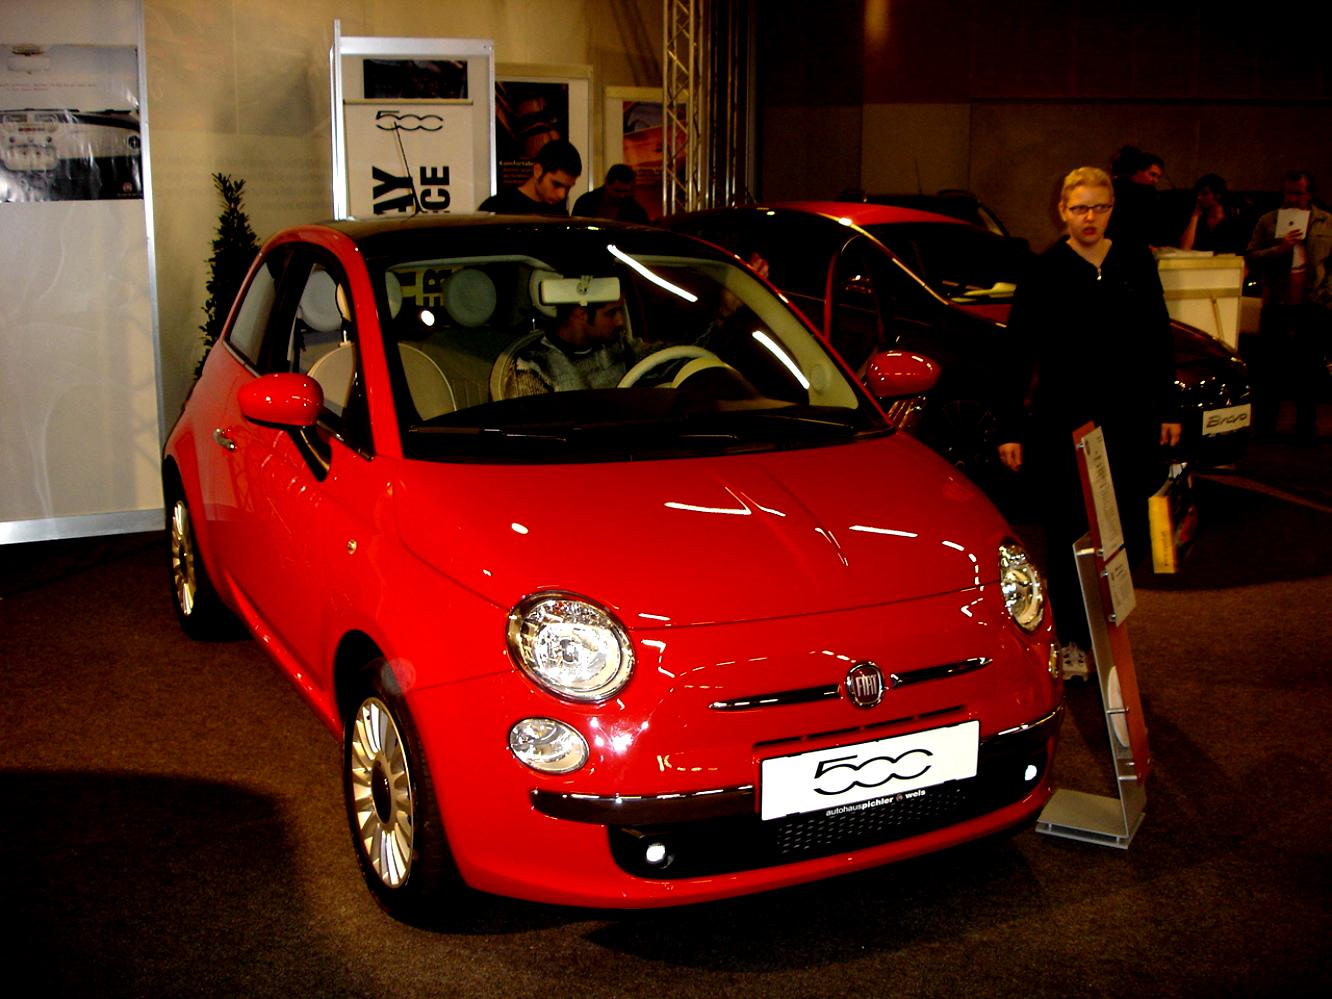 Fiat 500 2007 #24